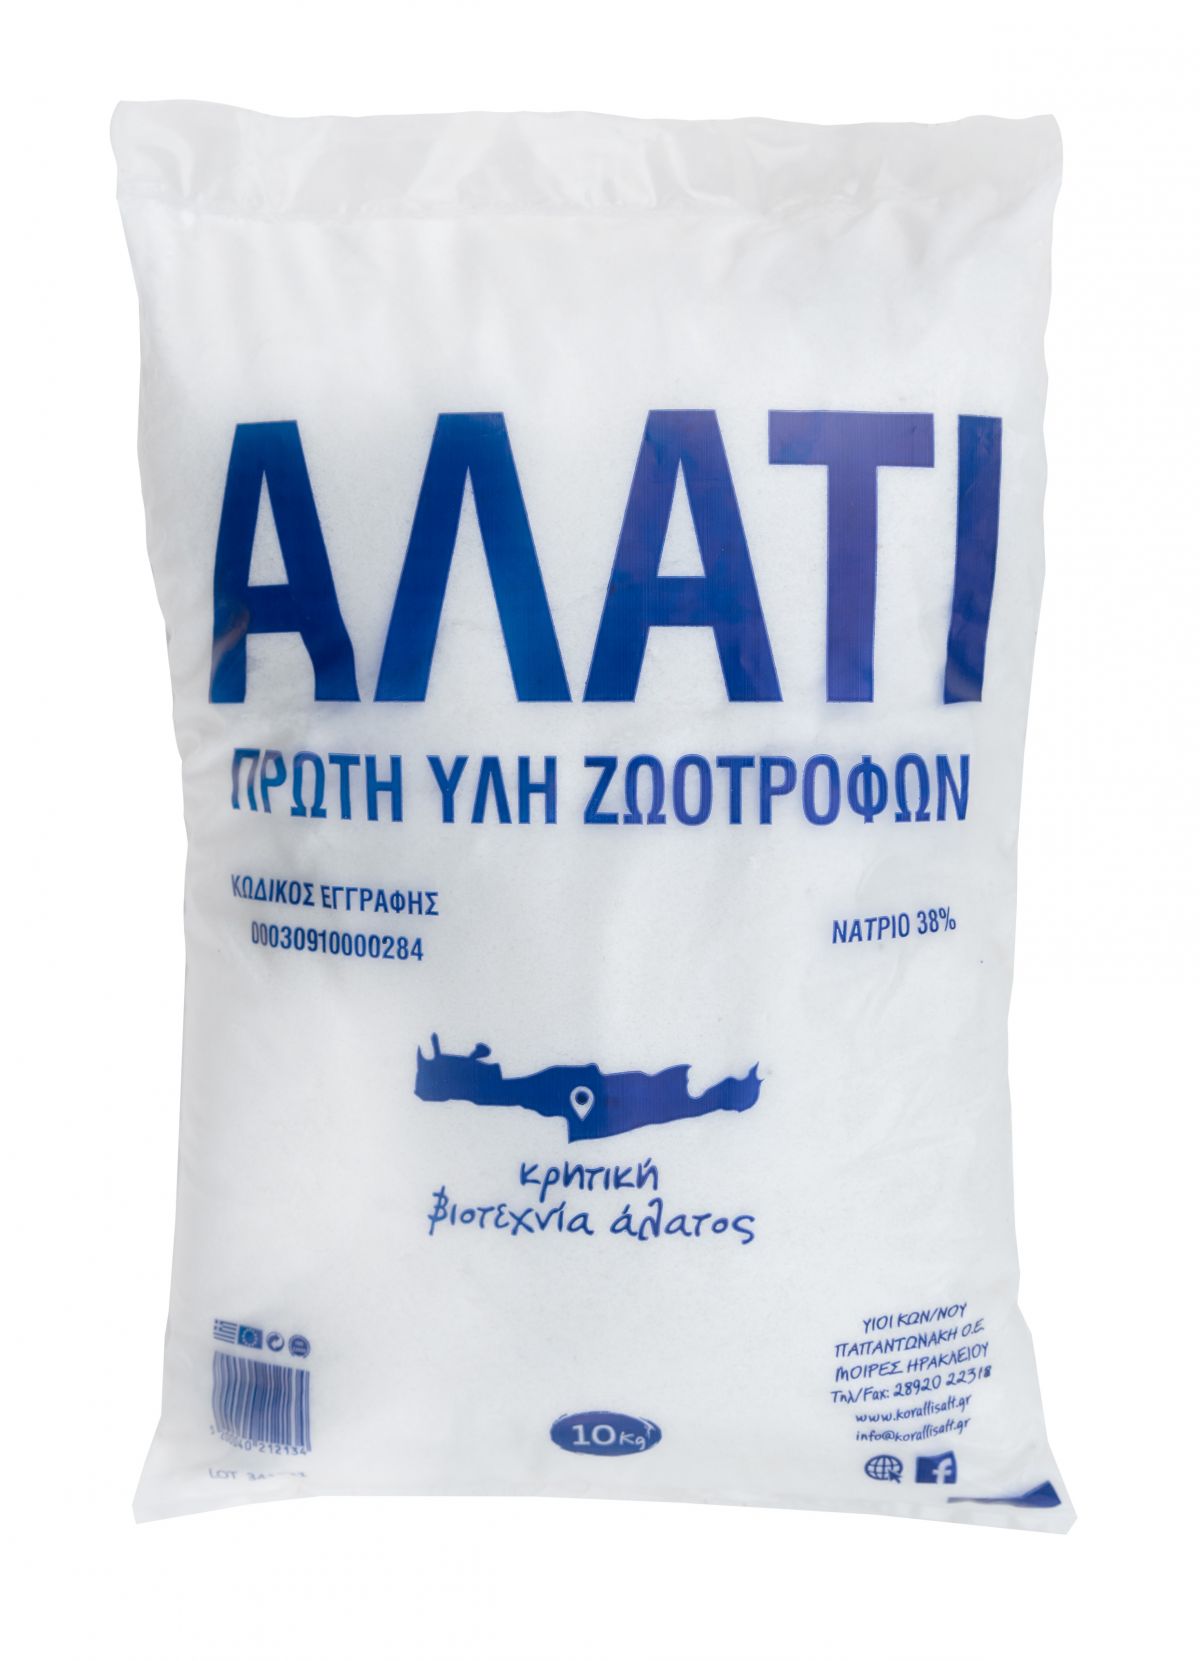 KORALLI animal feed salt 10kg